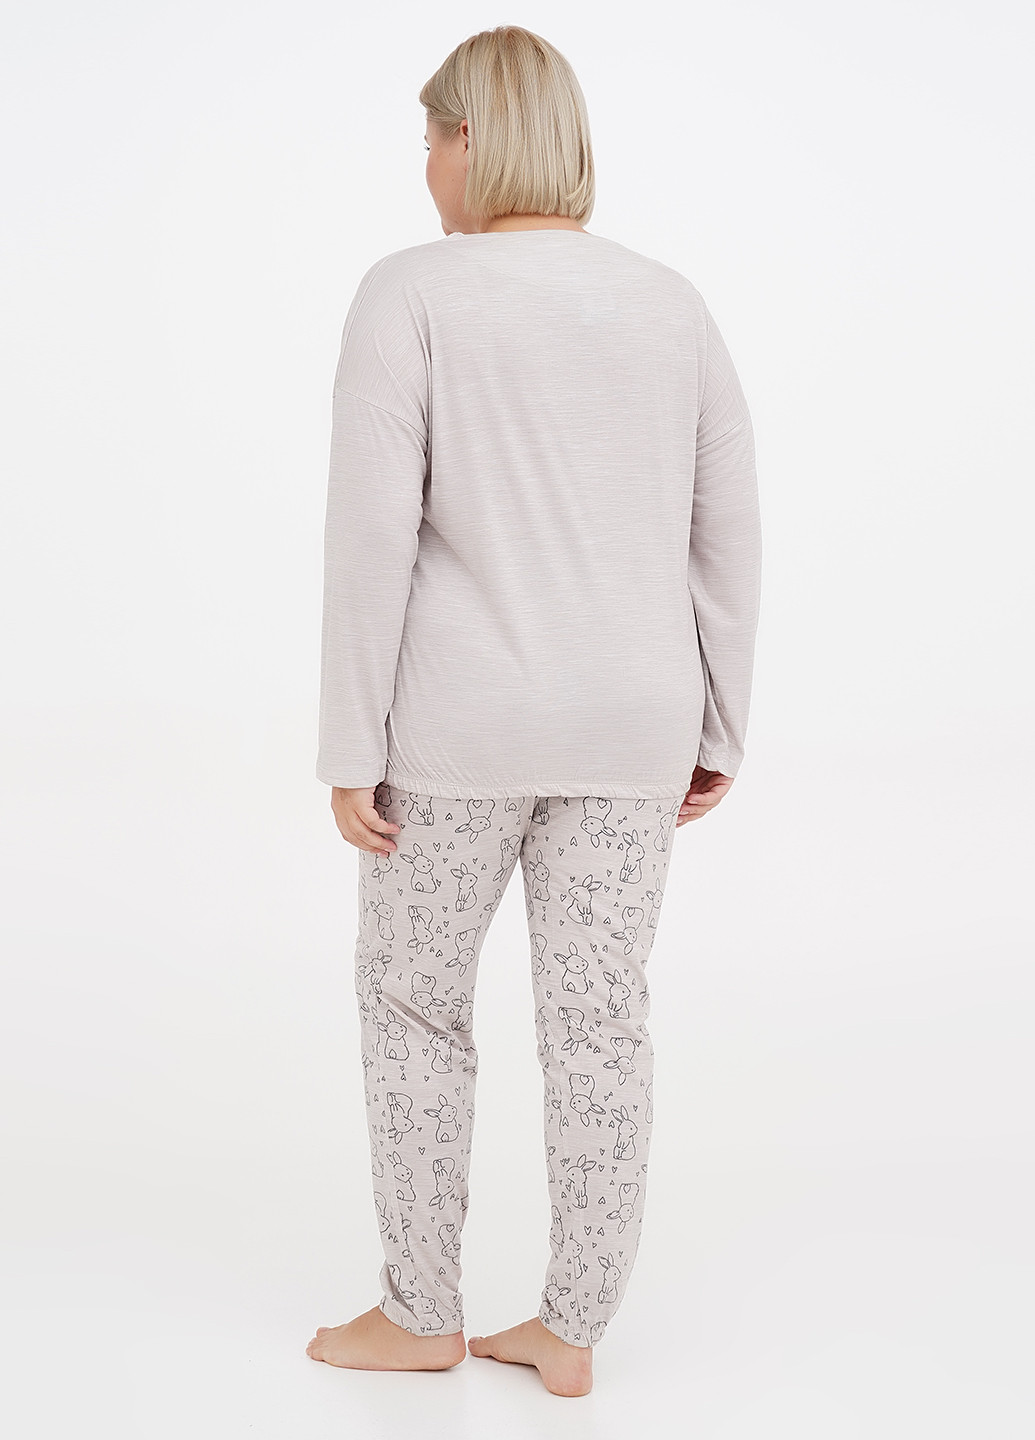 Светло-бежевая всесезон пижама (лонгслив, брюки) лонгслив + брюки Cotpark